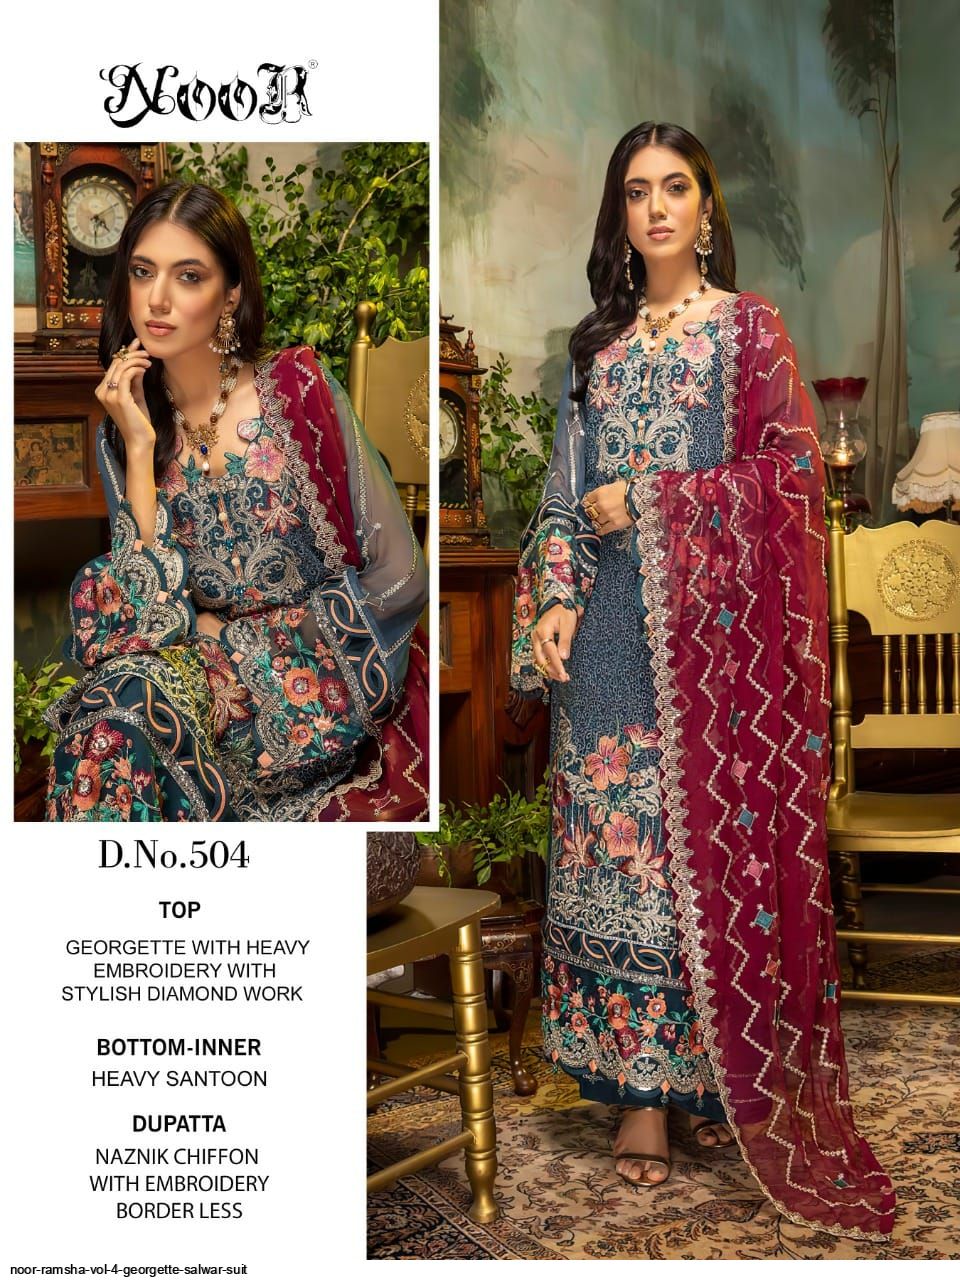 Noor Presents Ramsha Vol 4 Georgette Salwar Suit Wholesale Rate In Surat - Sai Dresses